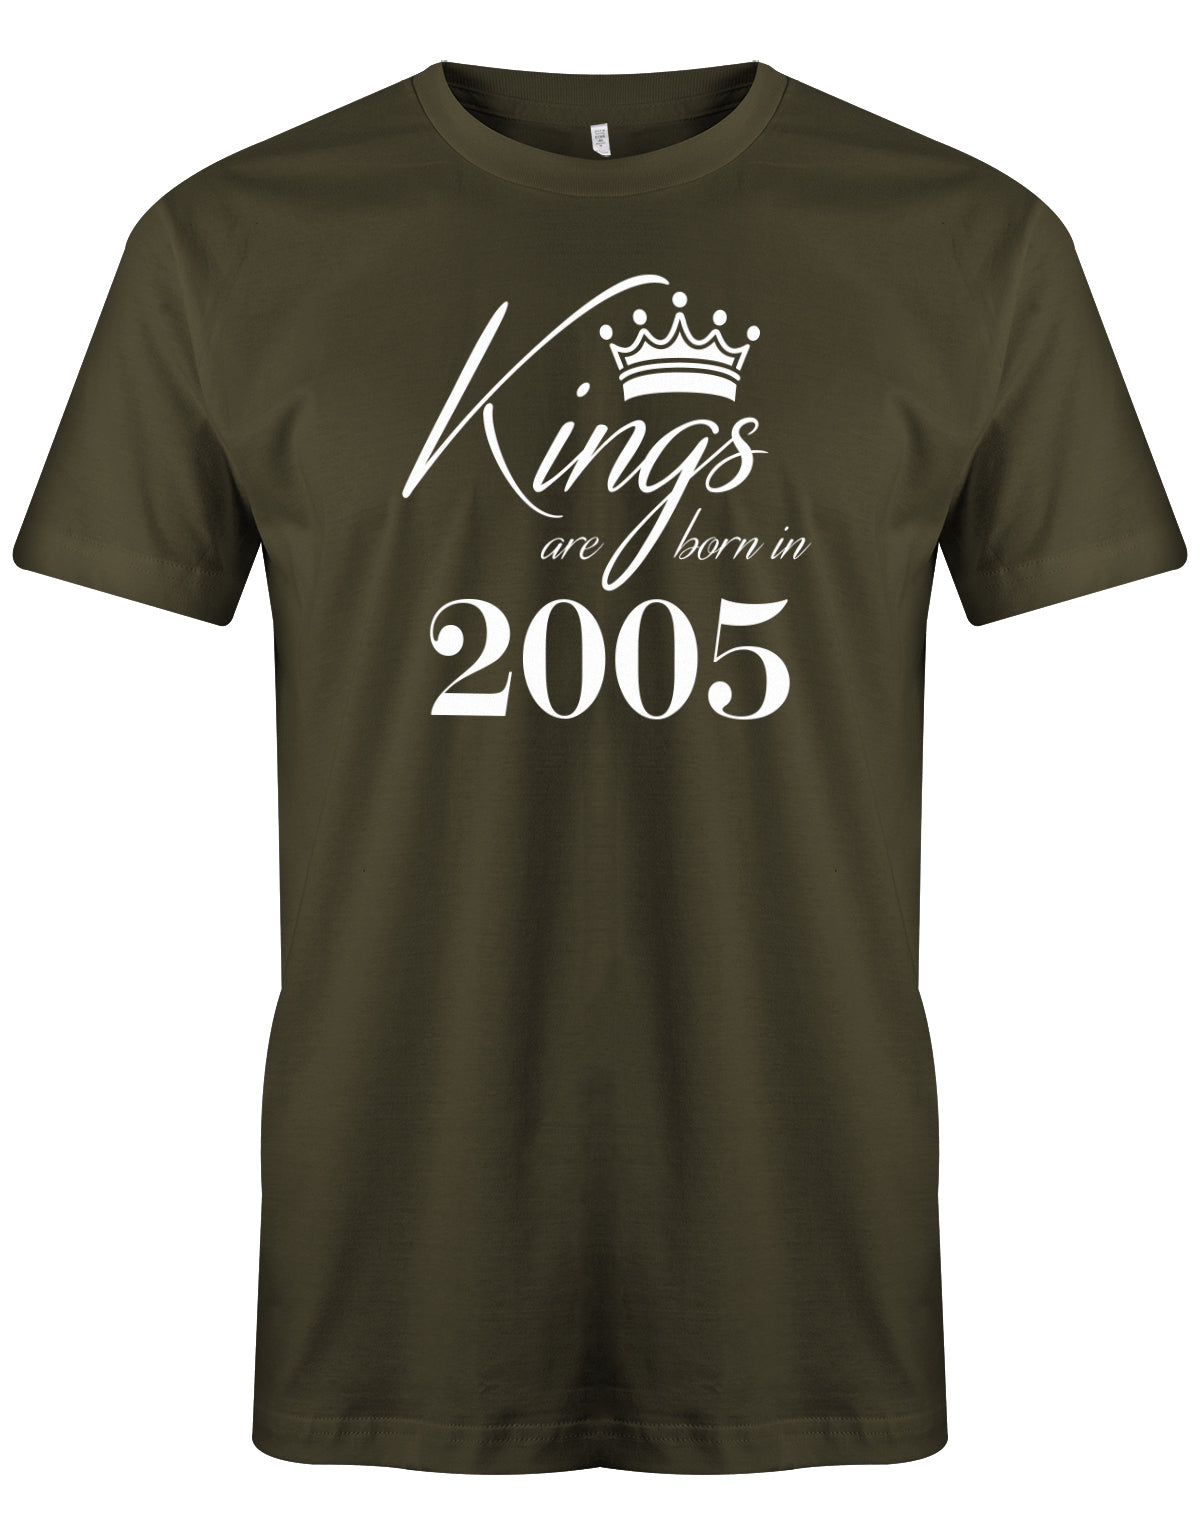 Cooles T-Shirt zum 18. Geburtstag für Jungen. Bedruckt mit: Kings areborn in 2005 - Könige werden 2005 geboren Das T Shirt 18 Geburtstag Junge Lustig ist ein tolles Geschenk für alle 18 Jährigen. Geschenk zum 18 geburtstag Jungen ✓ 2005 geburtstag Junge ✓ 18 Geburtstag tshirt ✓ shirt geburtstag 18 Army